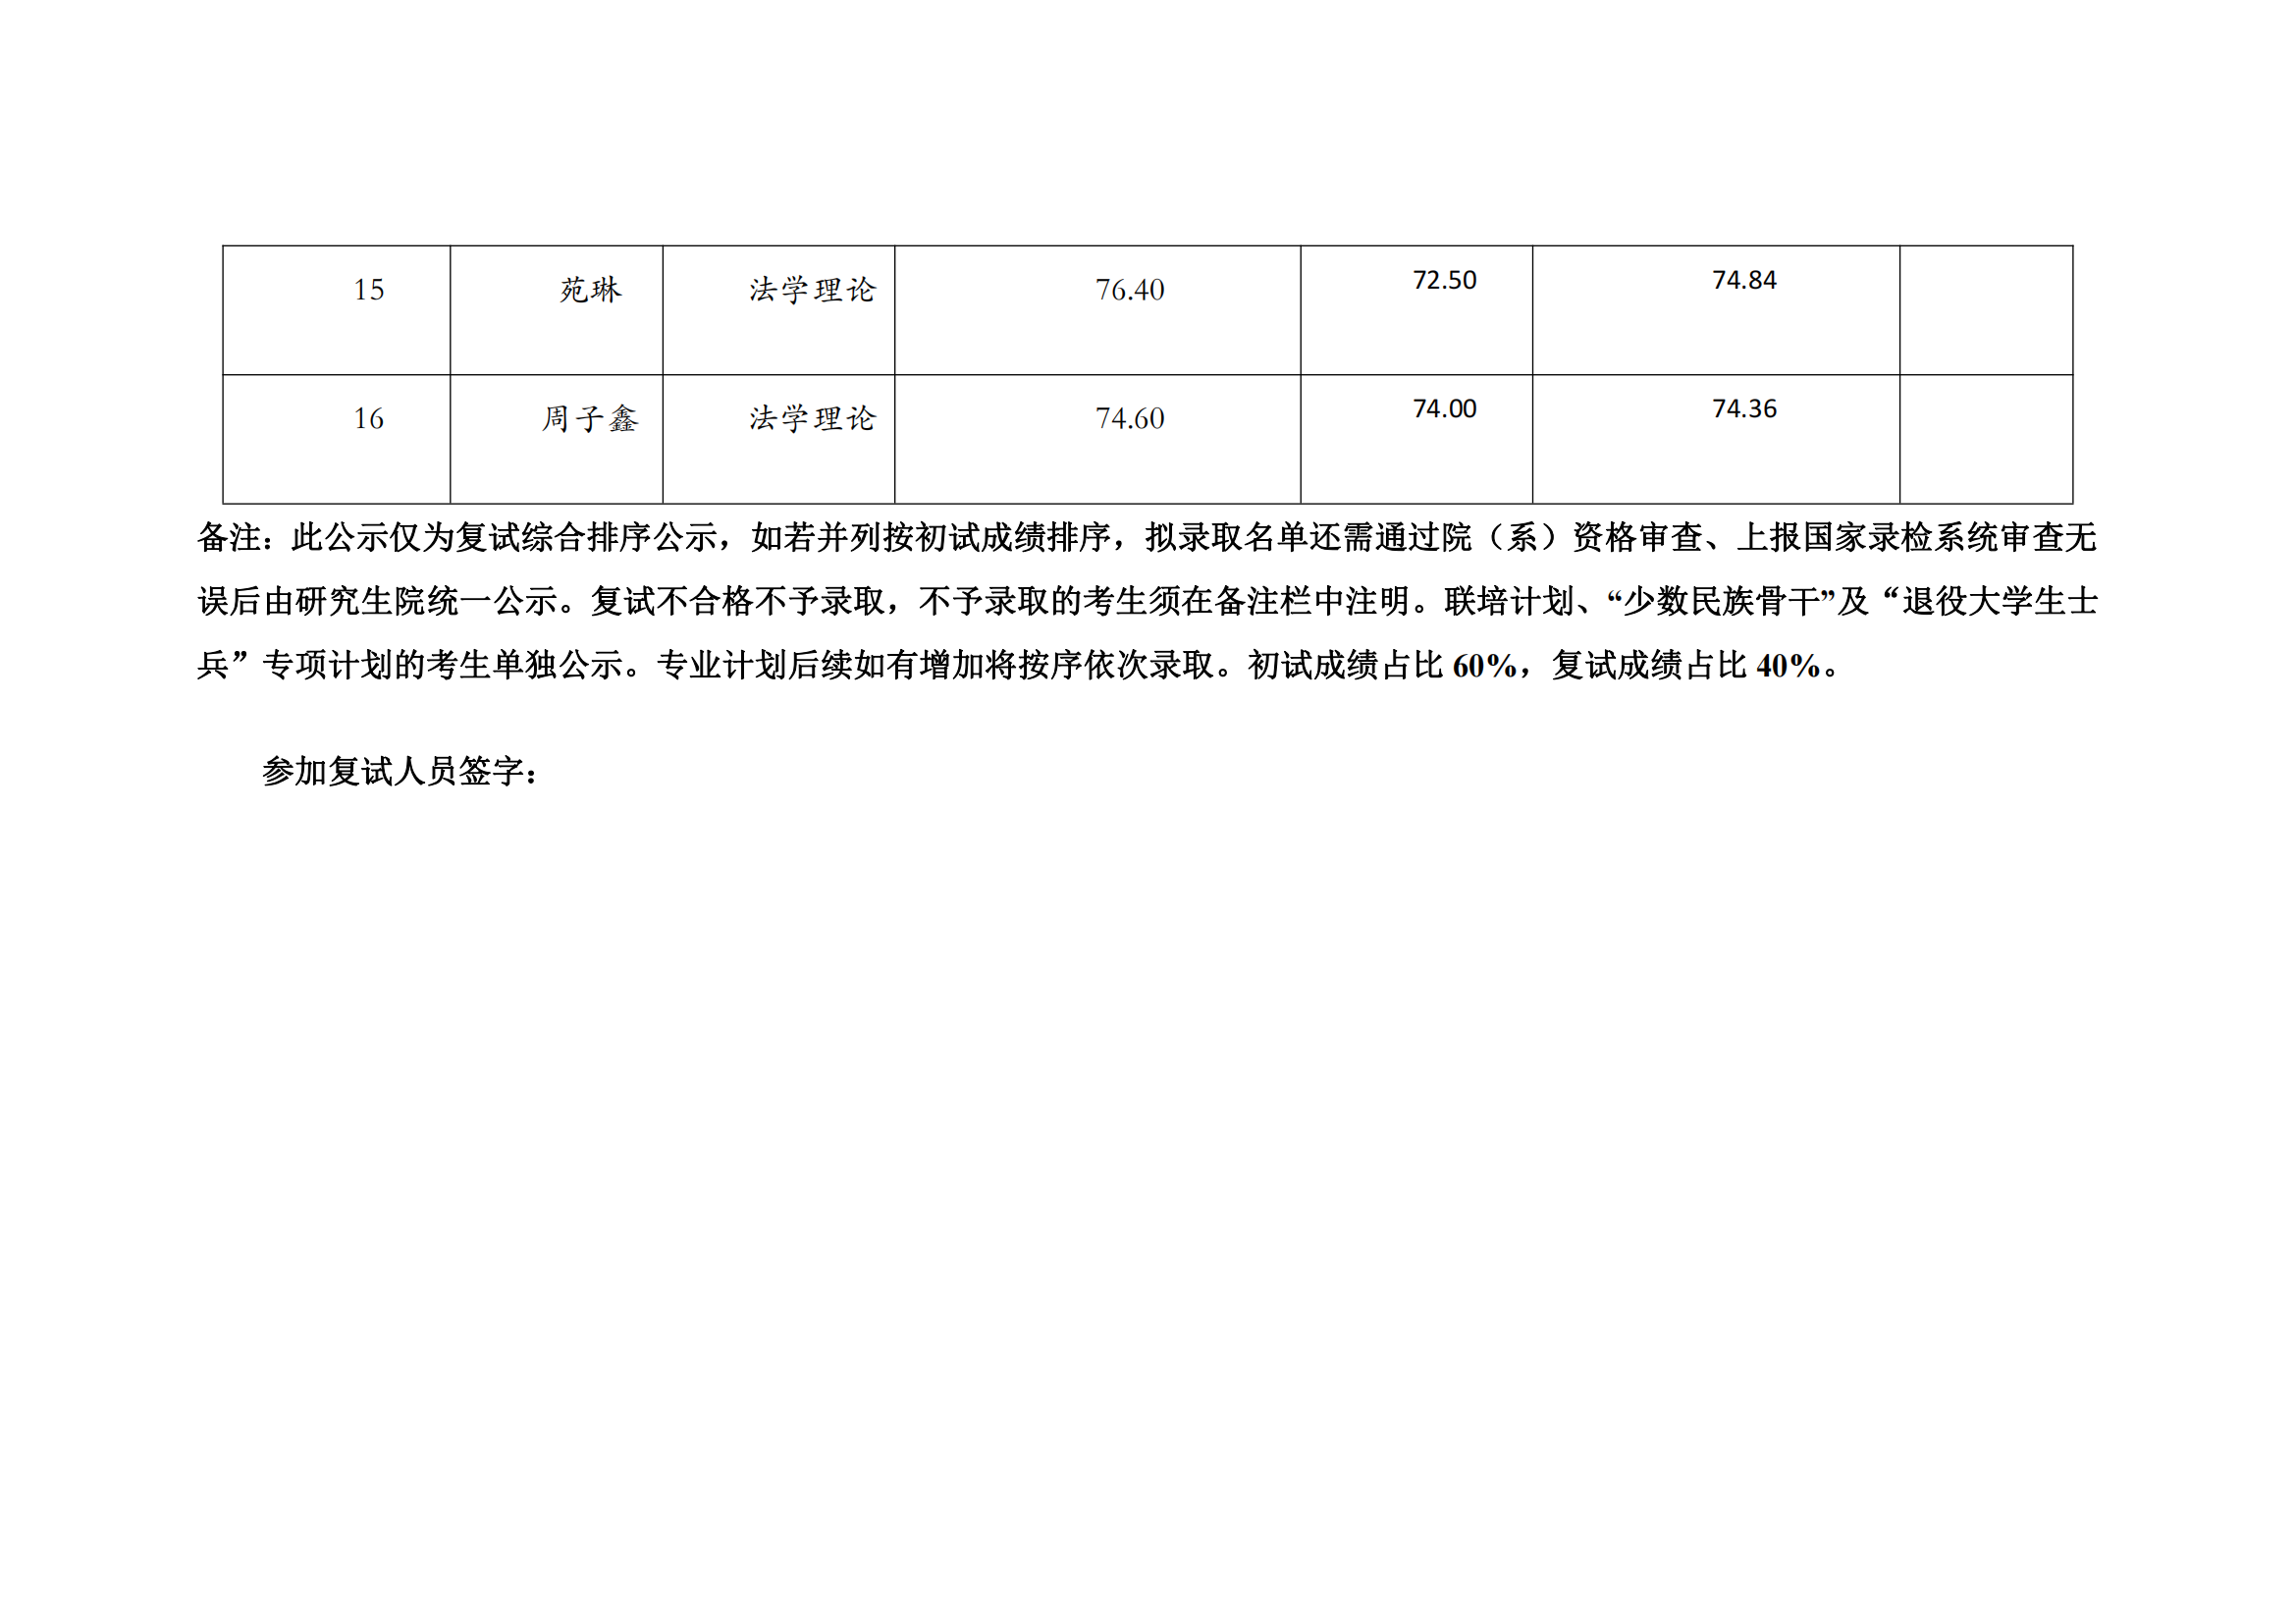 郑州大学2022年硕士研究生复试结果综合排序公示表【法学理论】_02.png